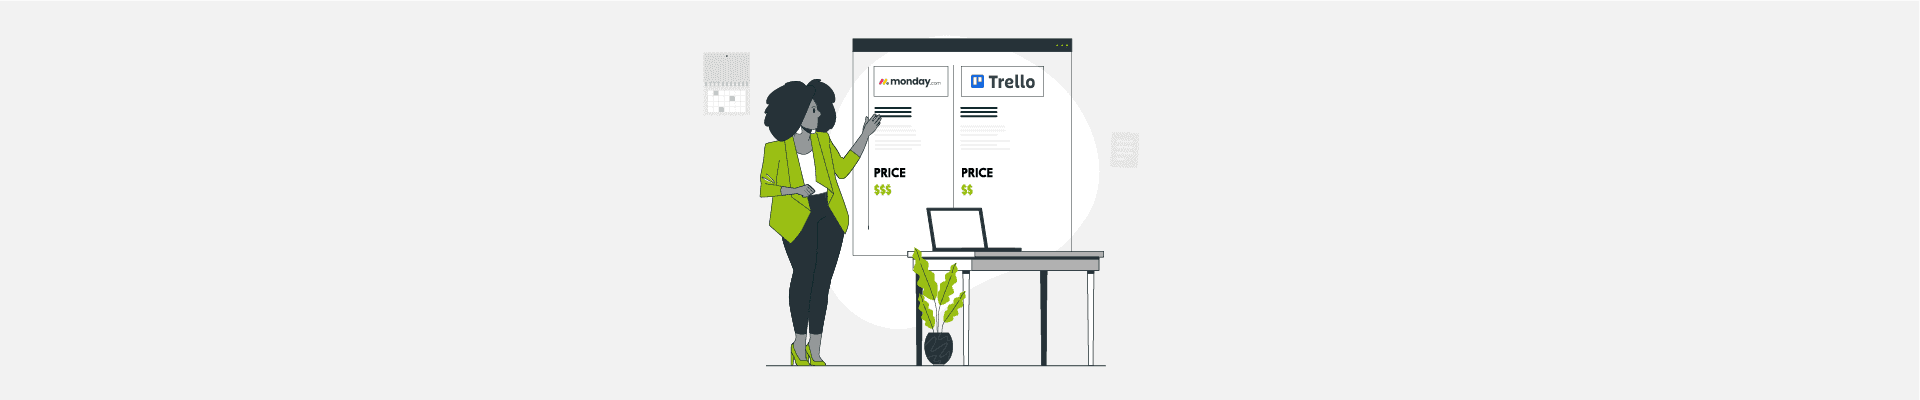 Monday vs Trello: Complete Feature & Pricing Comparison